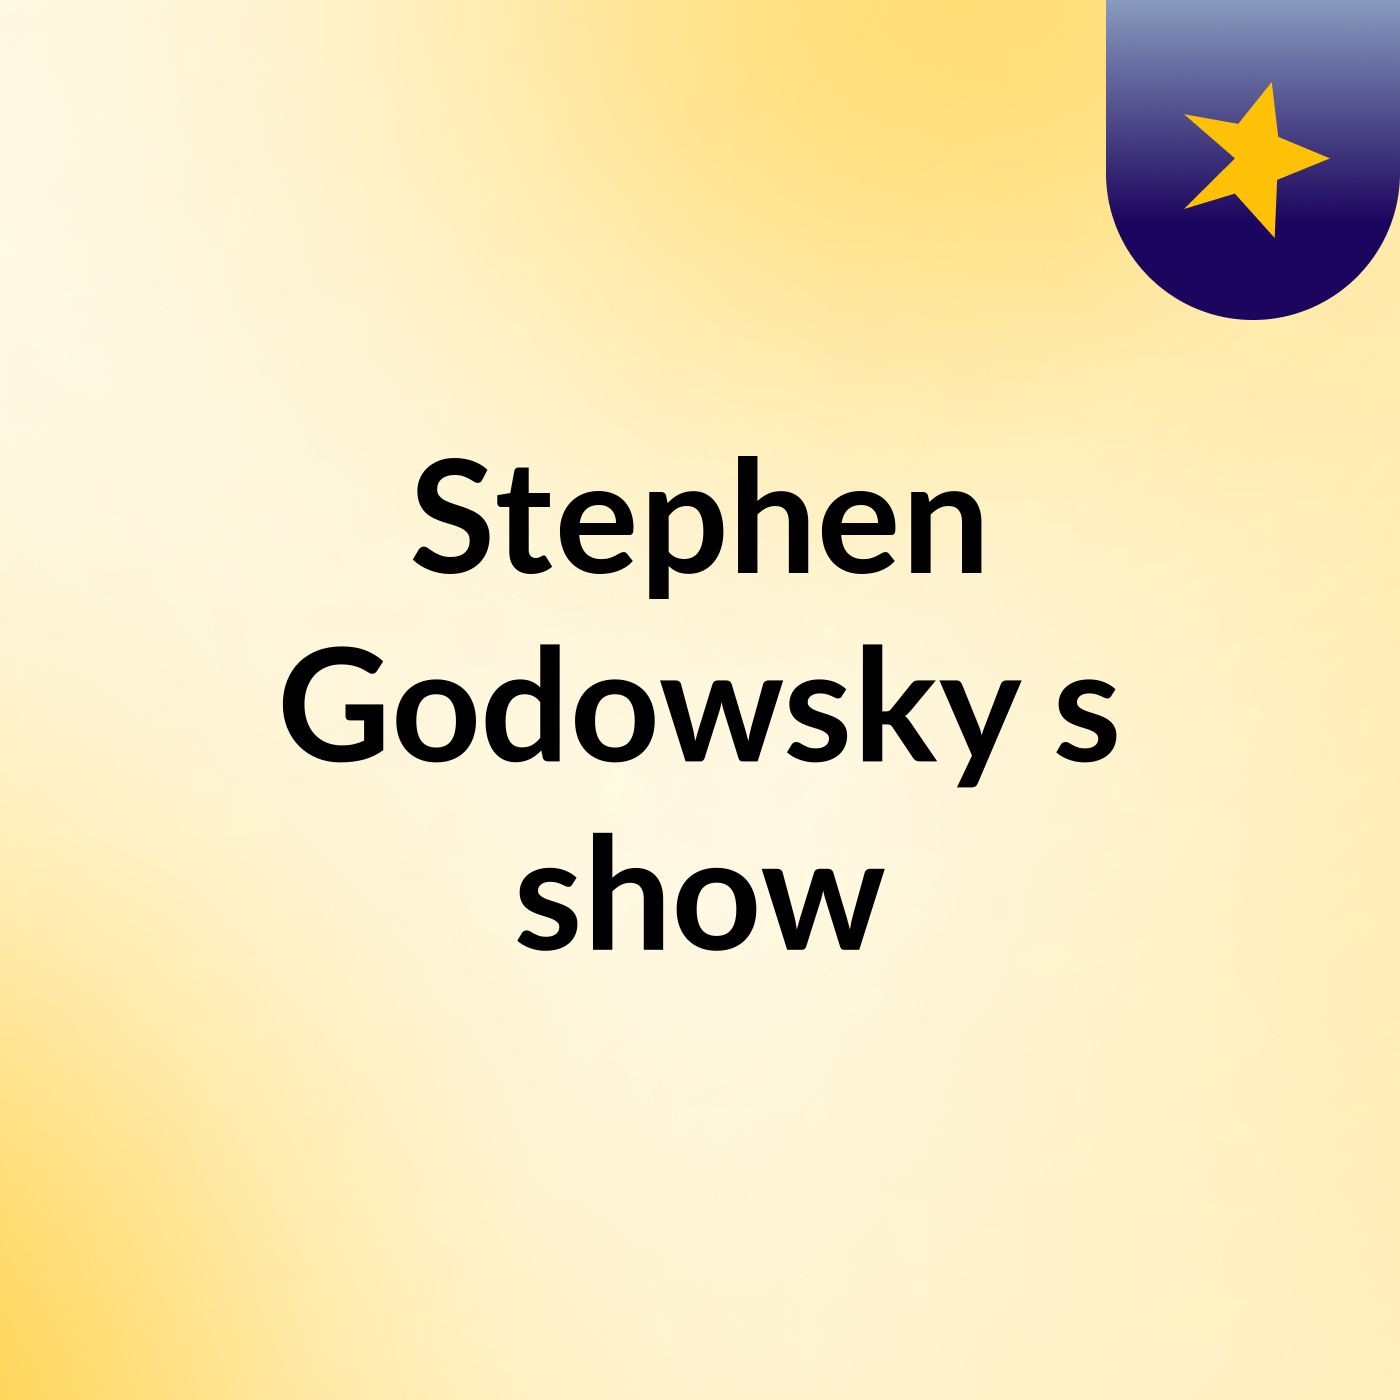 Stephen Godowsky's show